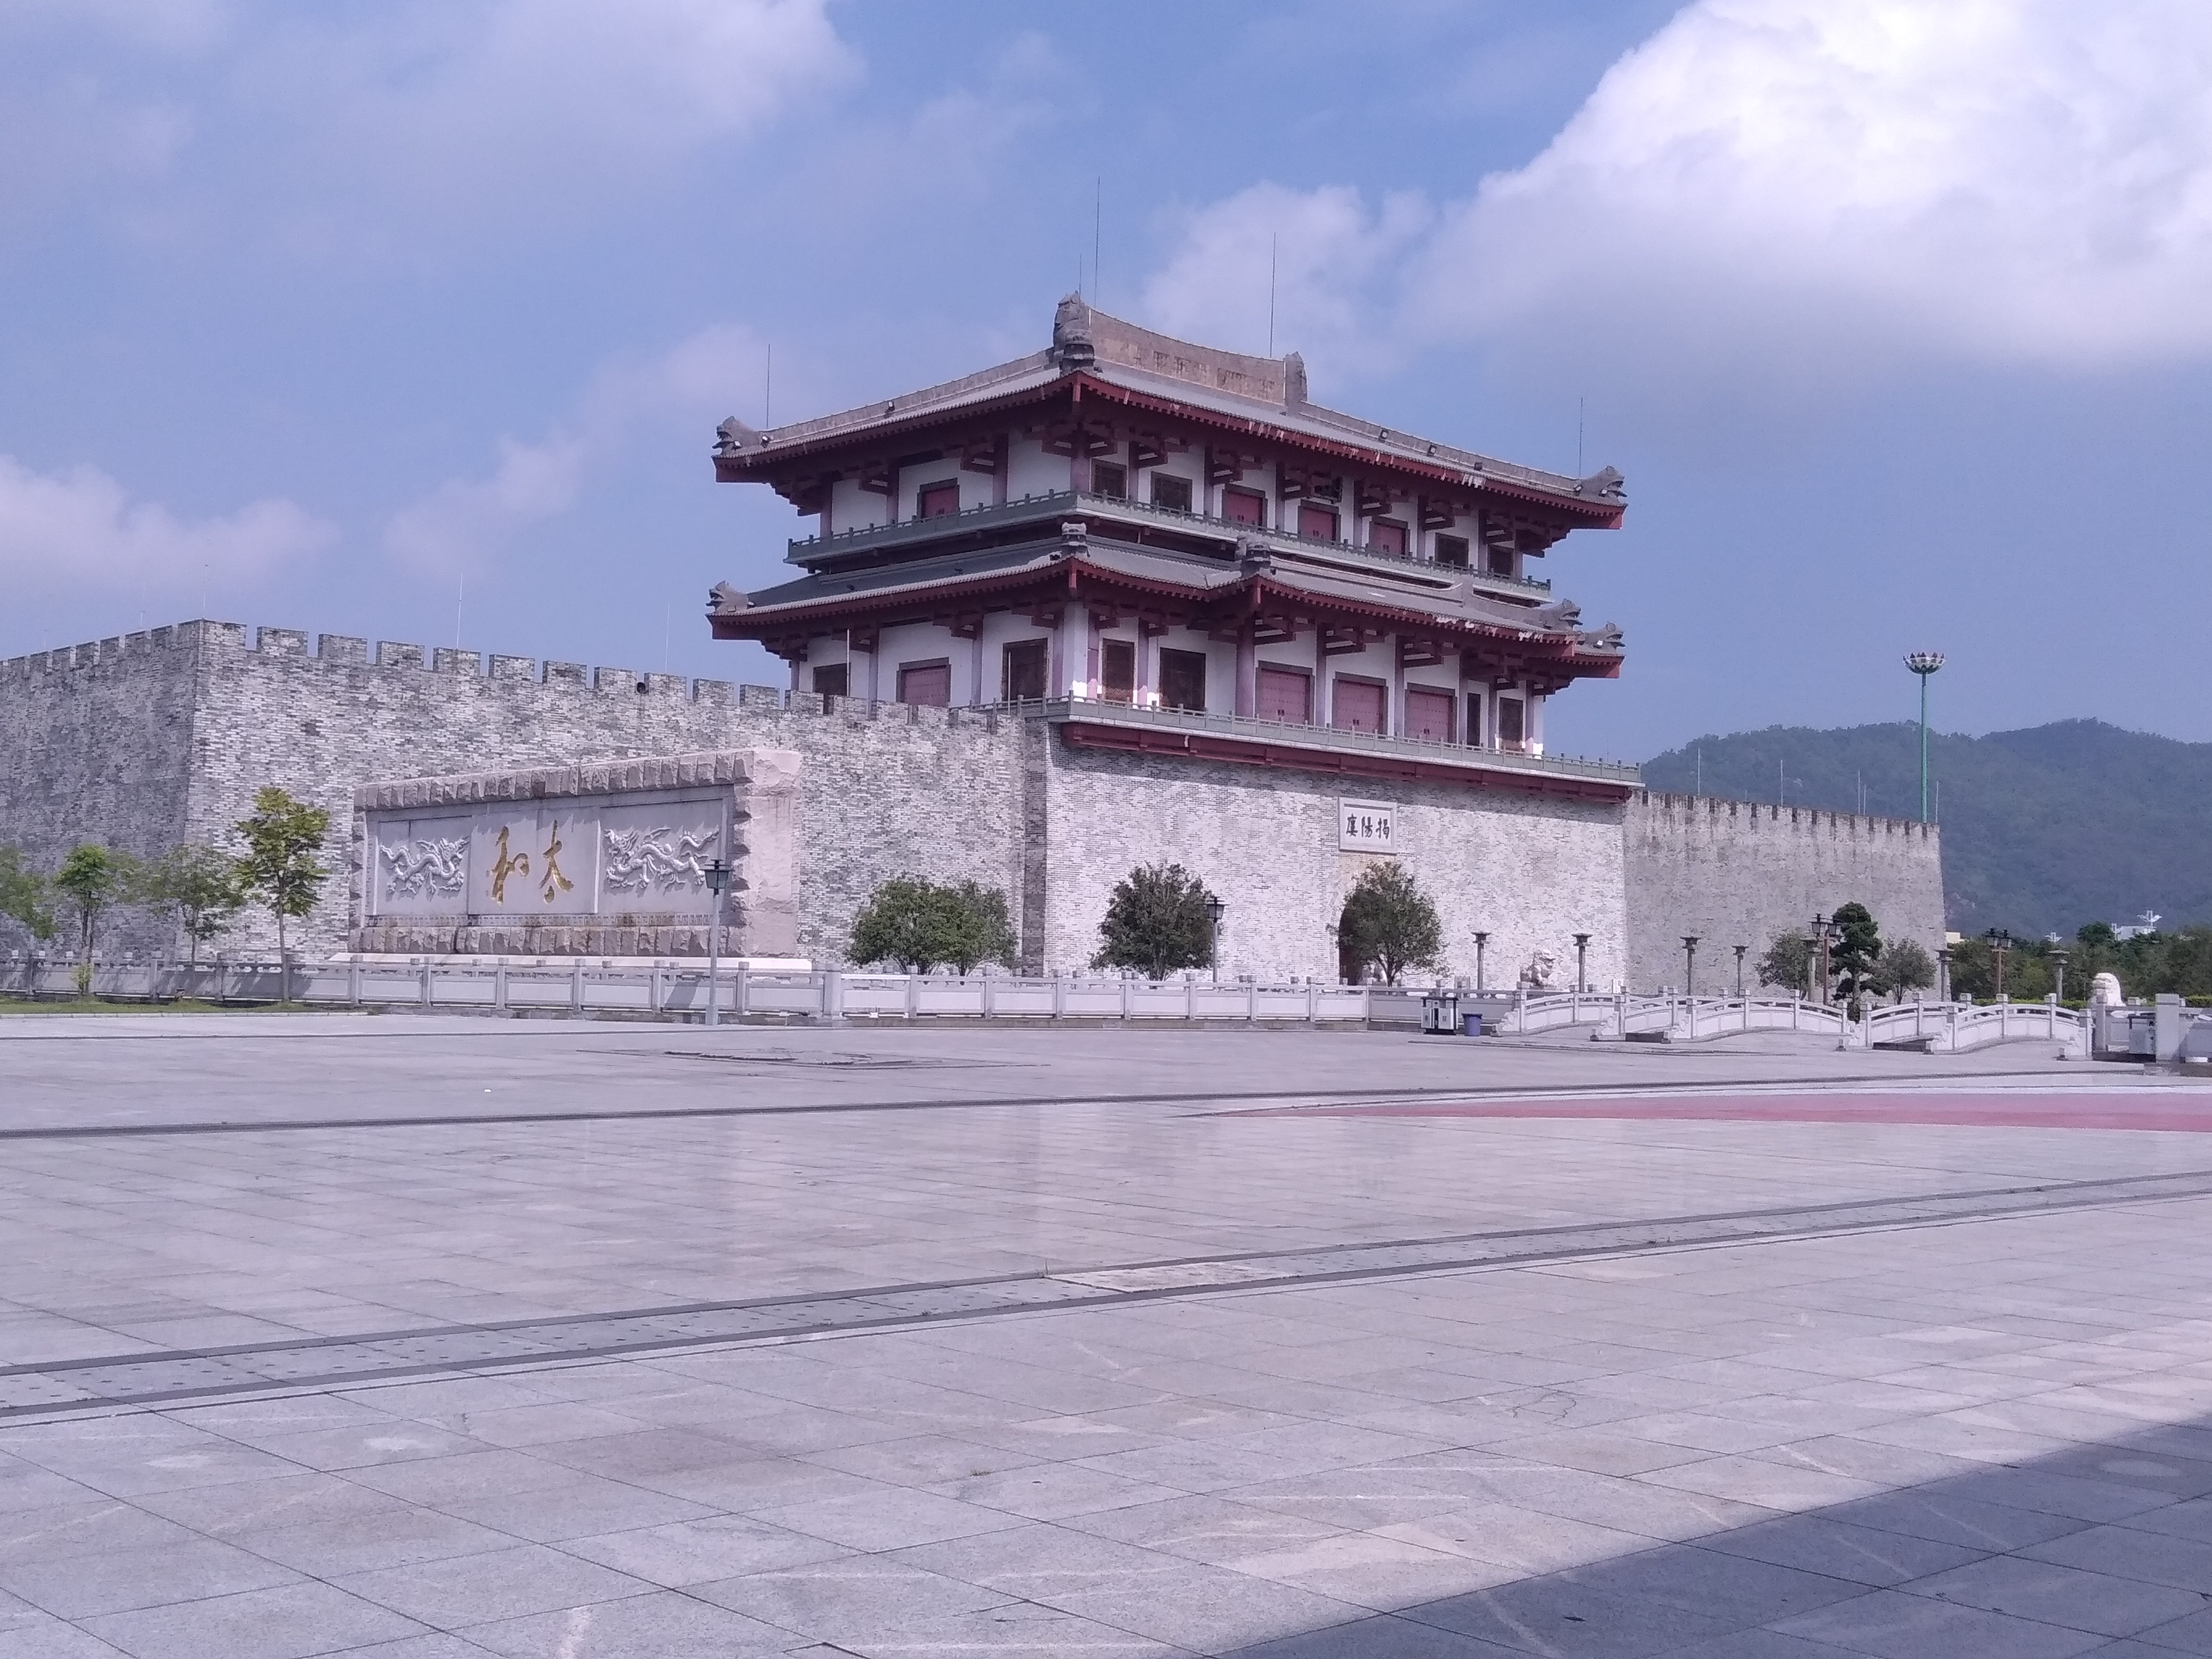 揭阳楼位于揭阳市榕城区东入口,该楼始建于唐朝中期,已有一千多年的